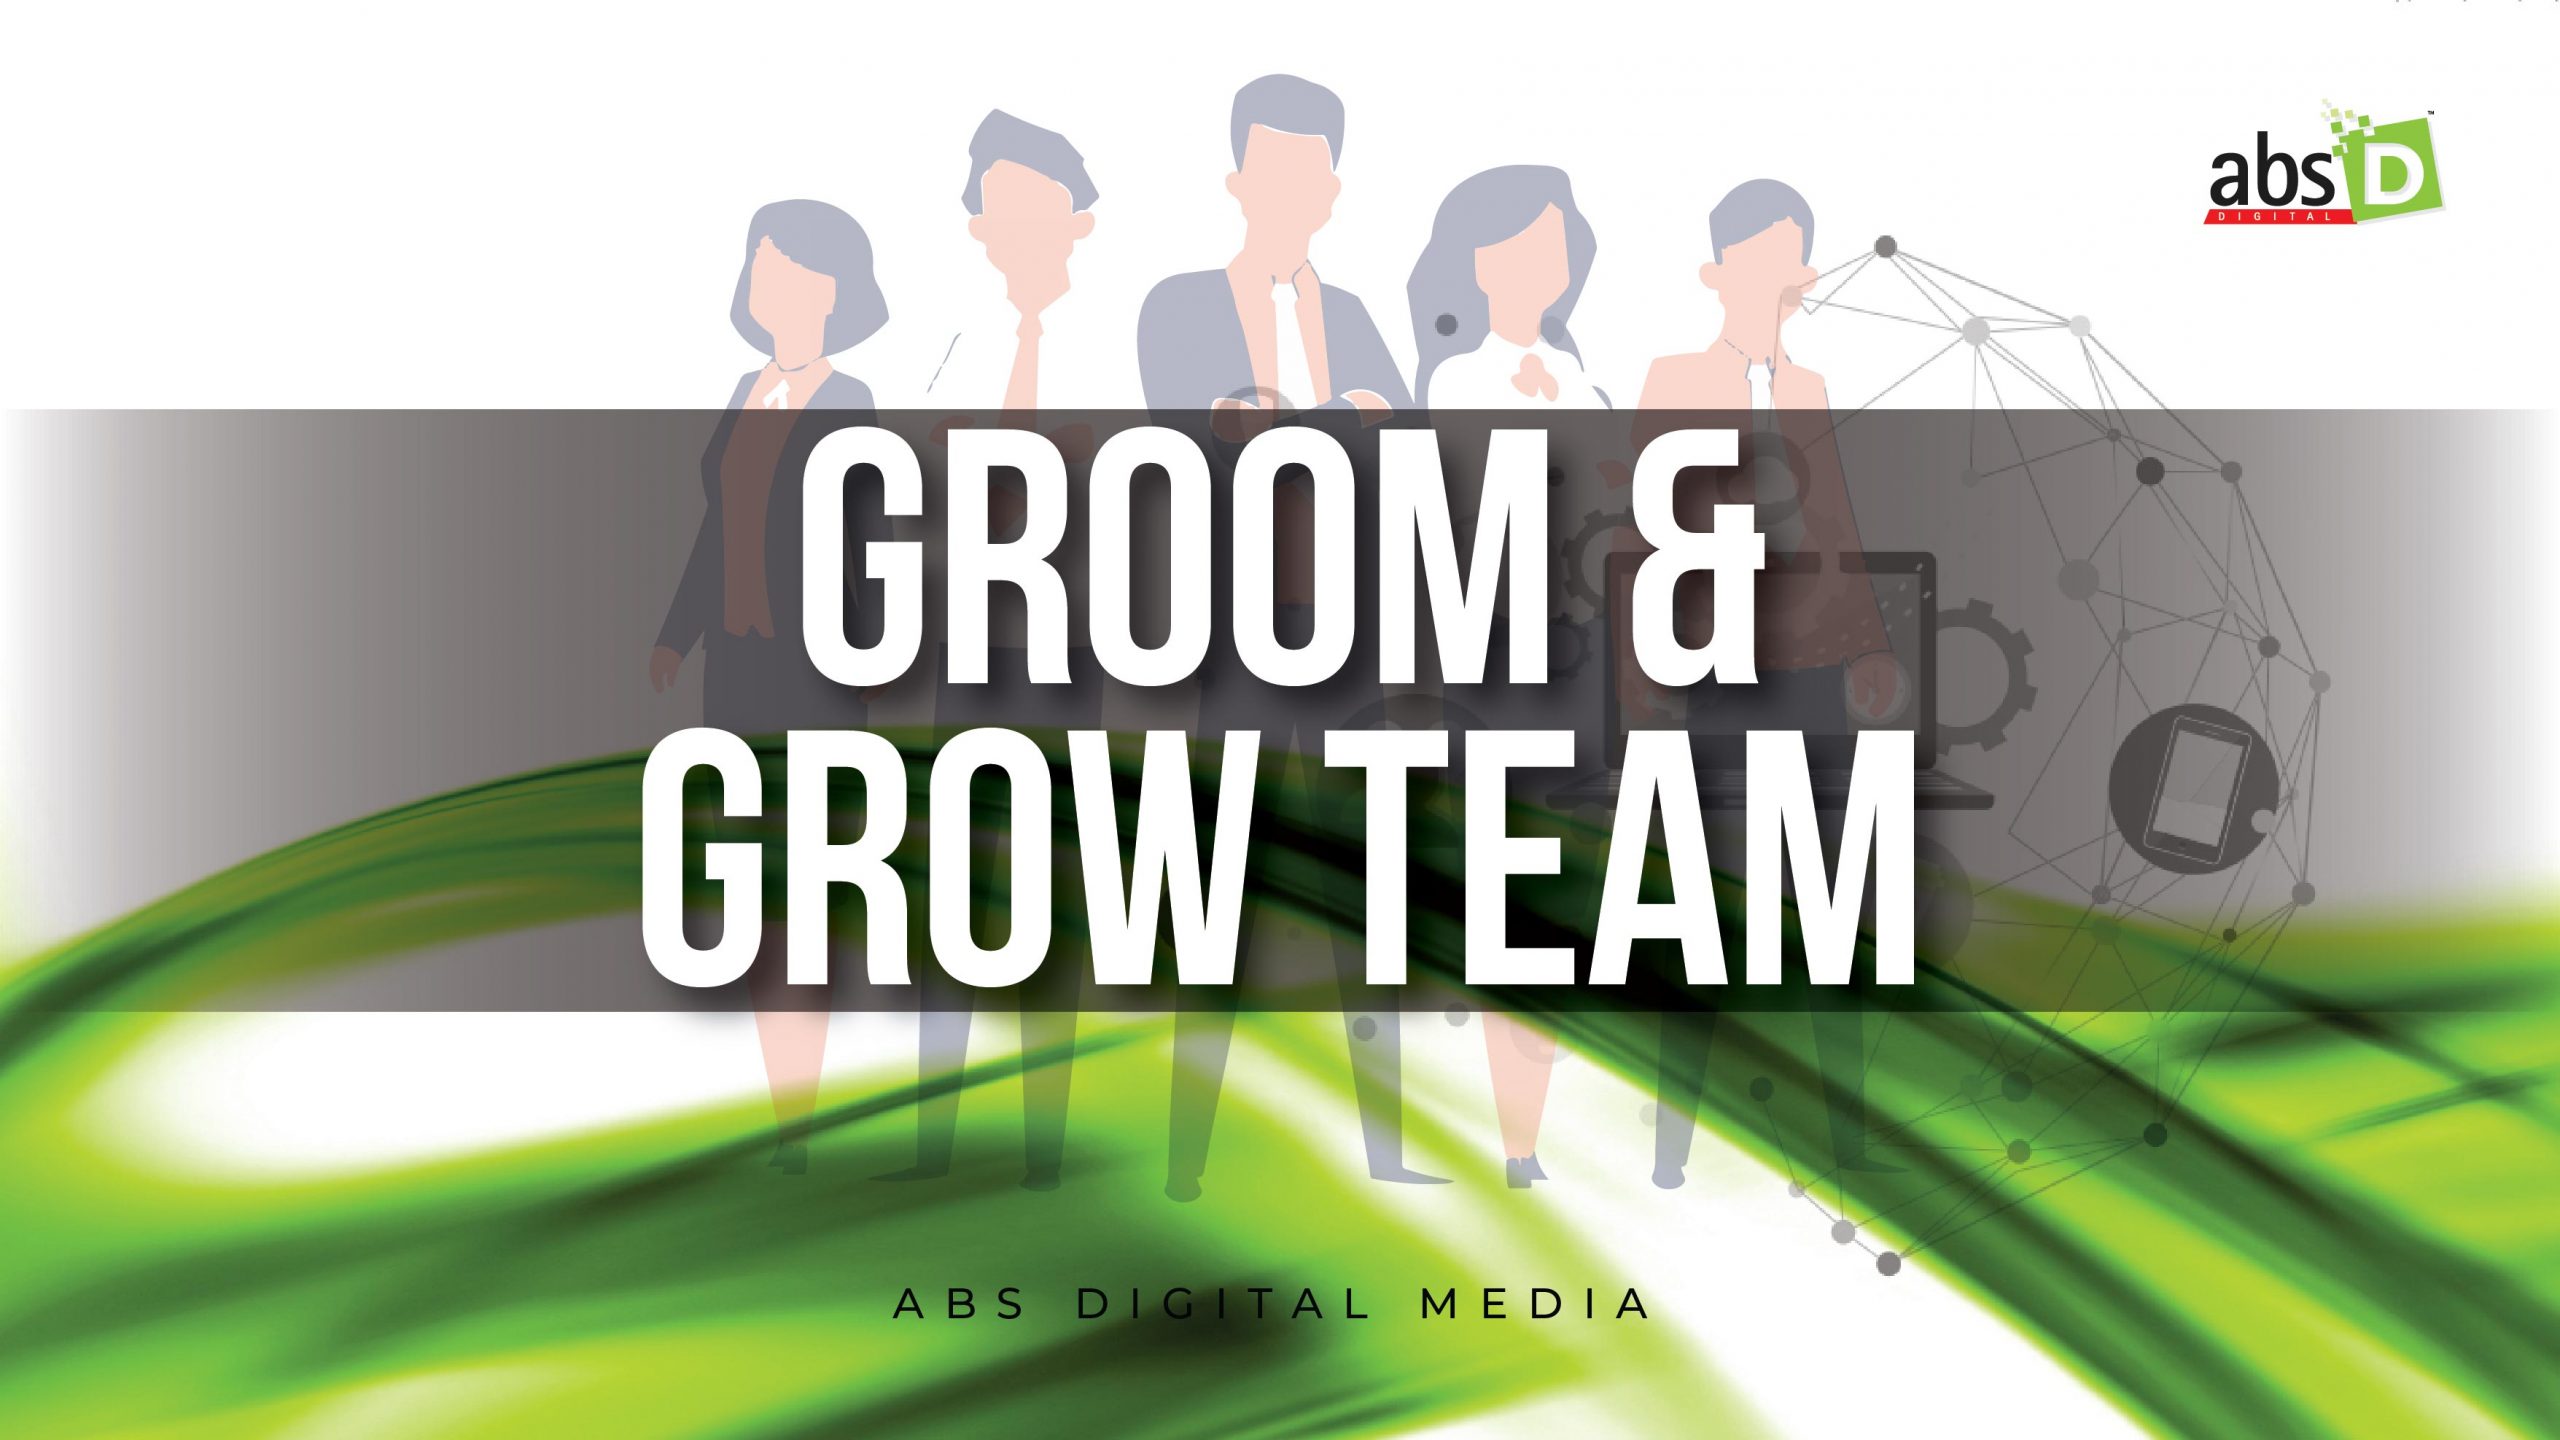 Groom & Grow Team